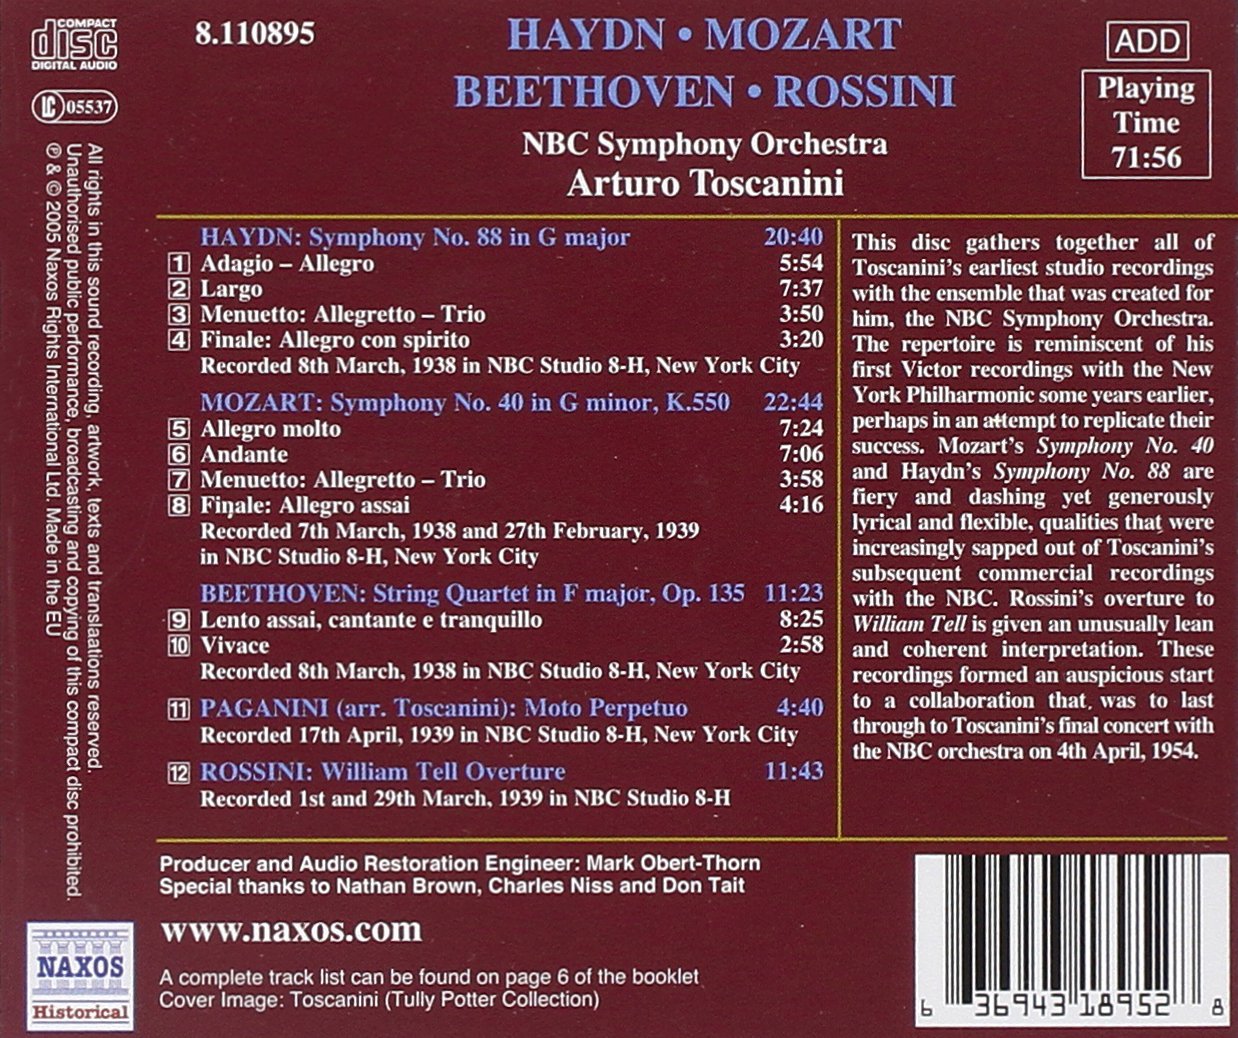 Arturo Toscanini 하이든: 교향곡 88번 / 모차르트: 교향곡 40번 (Haydn : Symphony No.88 / Mozart : Symphony No.40 'Toscanini')